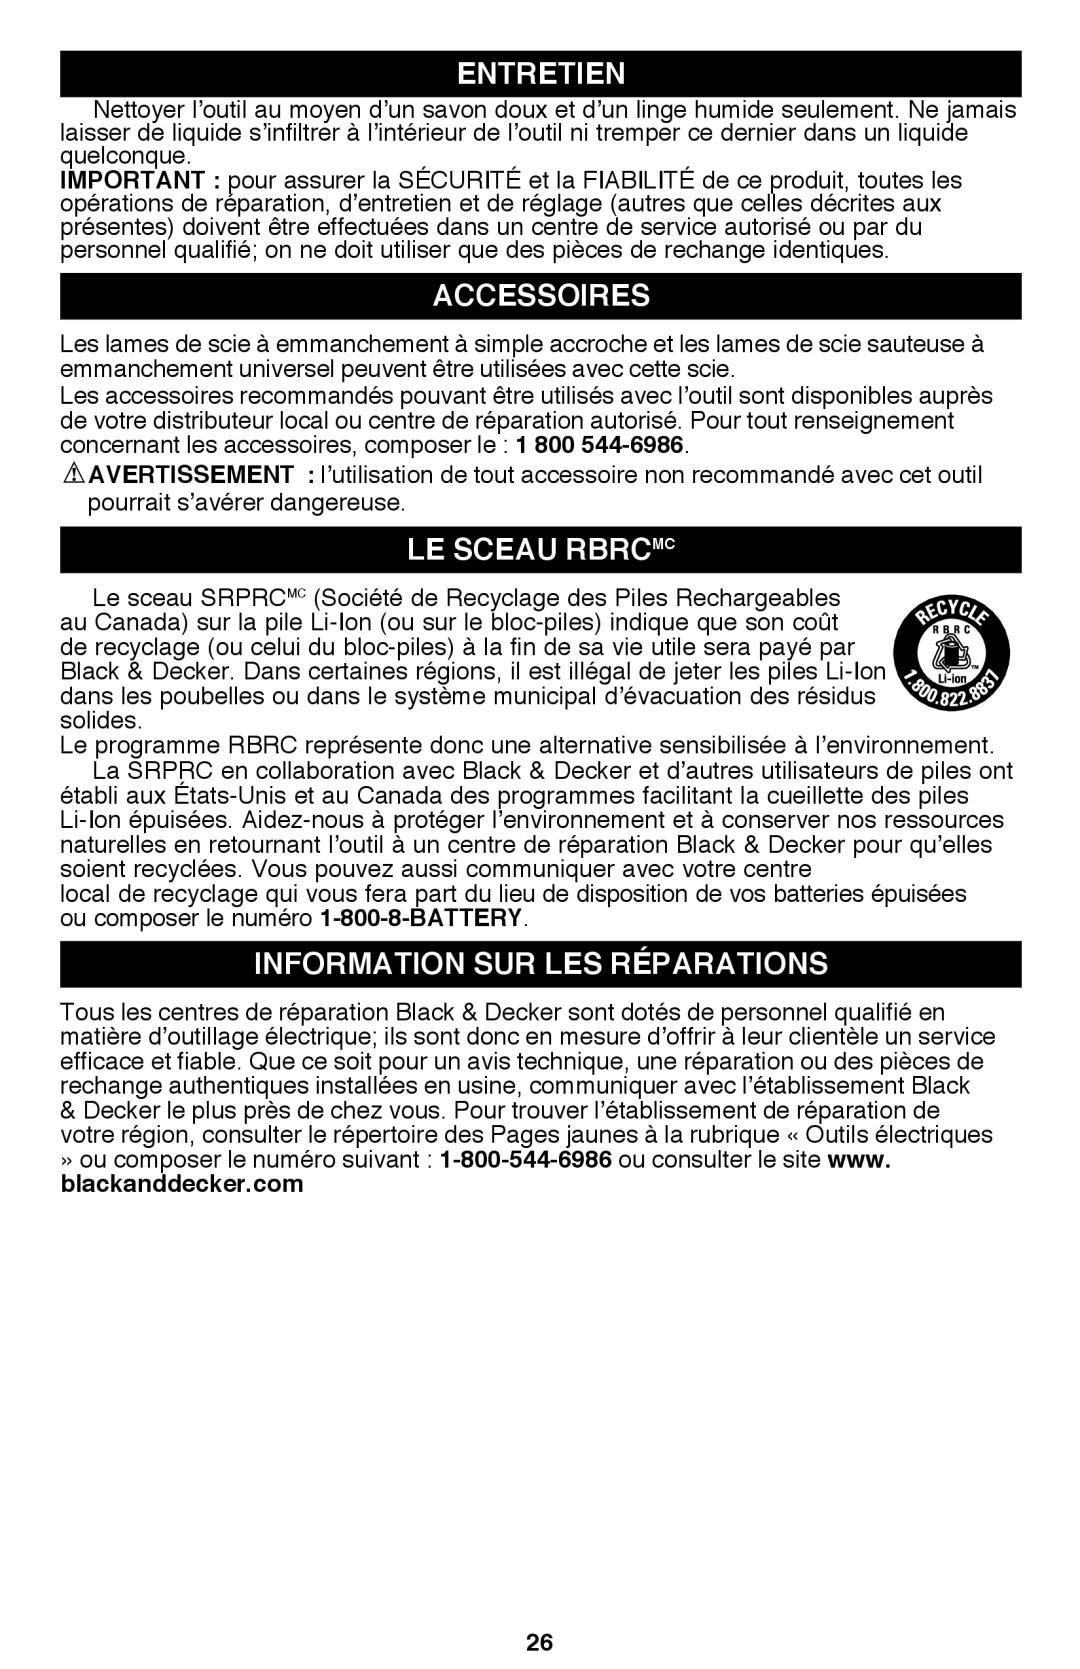 Black & Decker PSL12 instruction manual Entretien, Accessoires, Le Sceau Rbrcmc, Information sur les réparations 